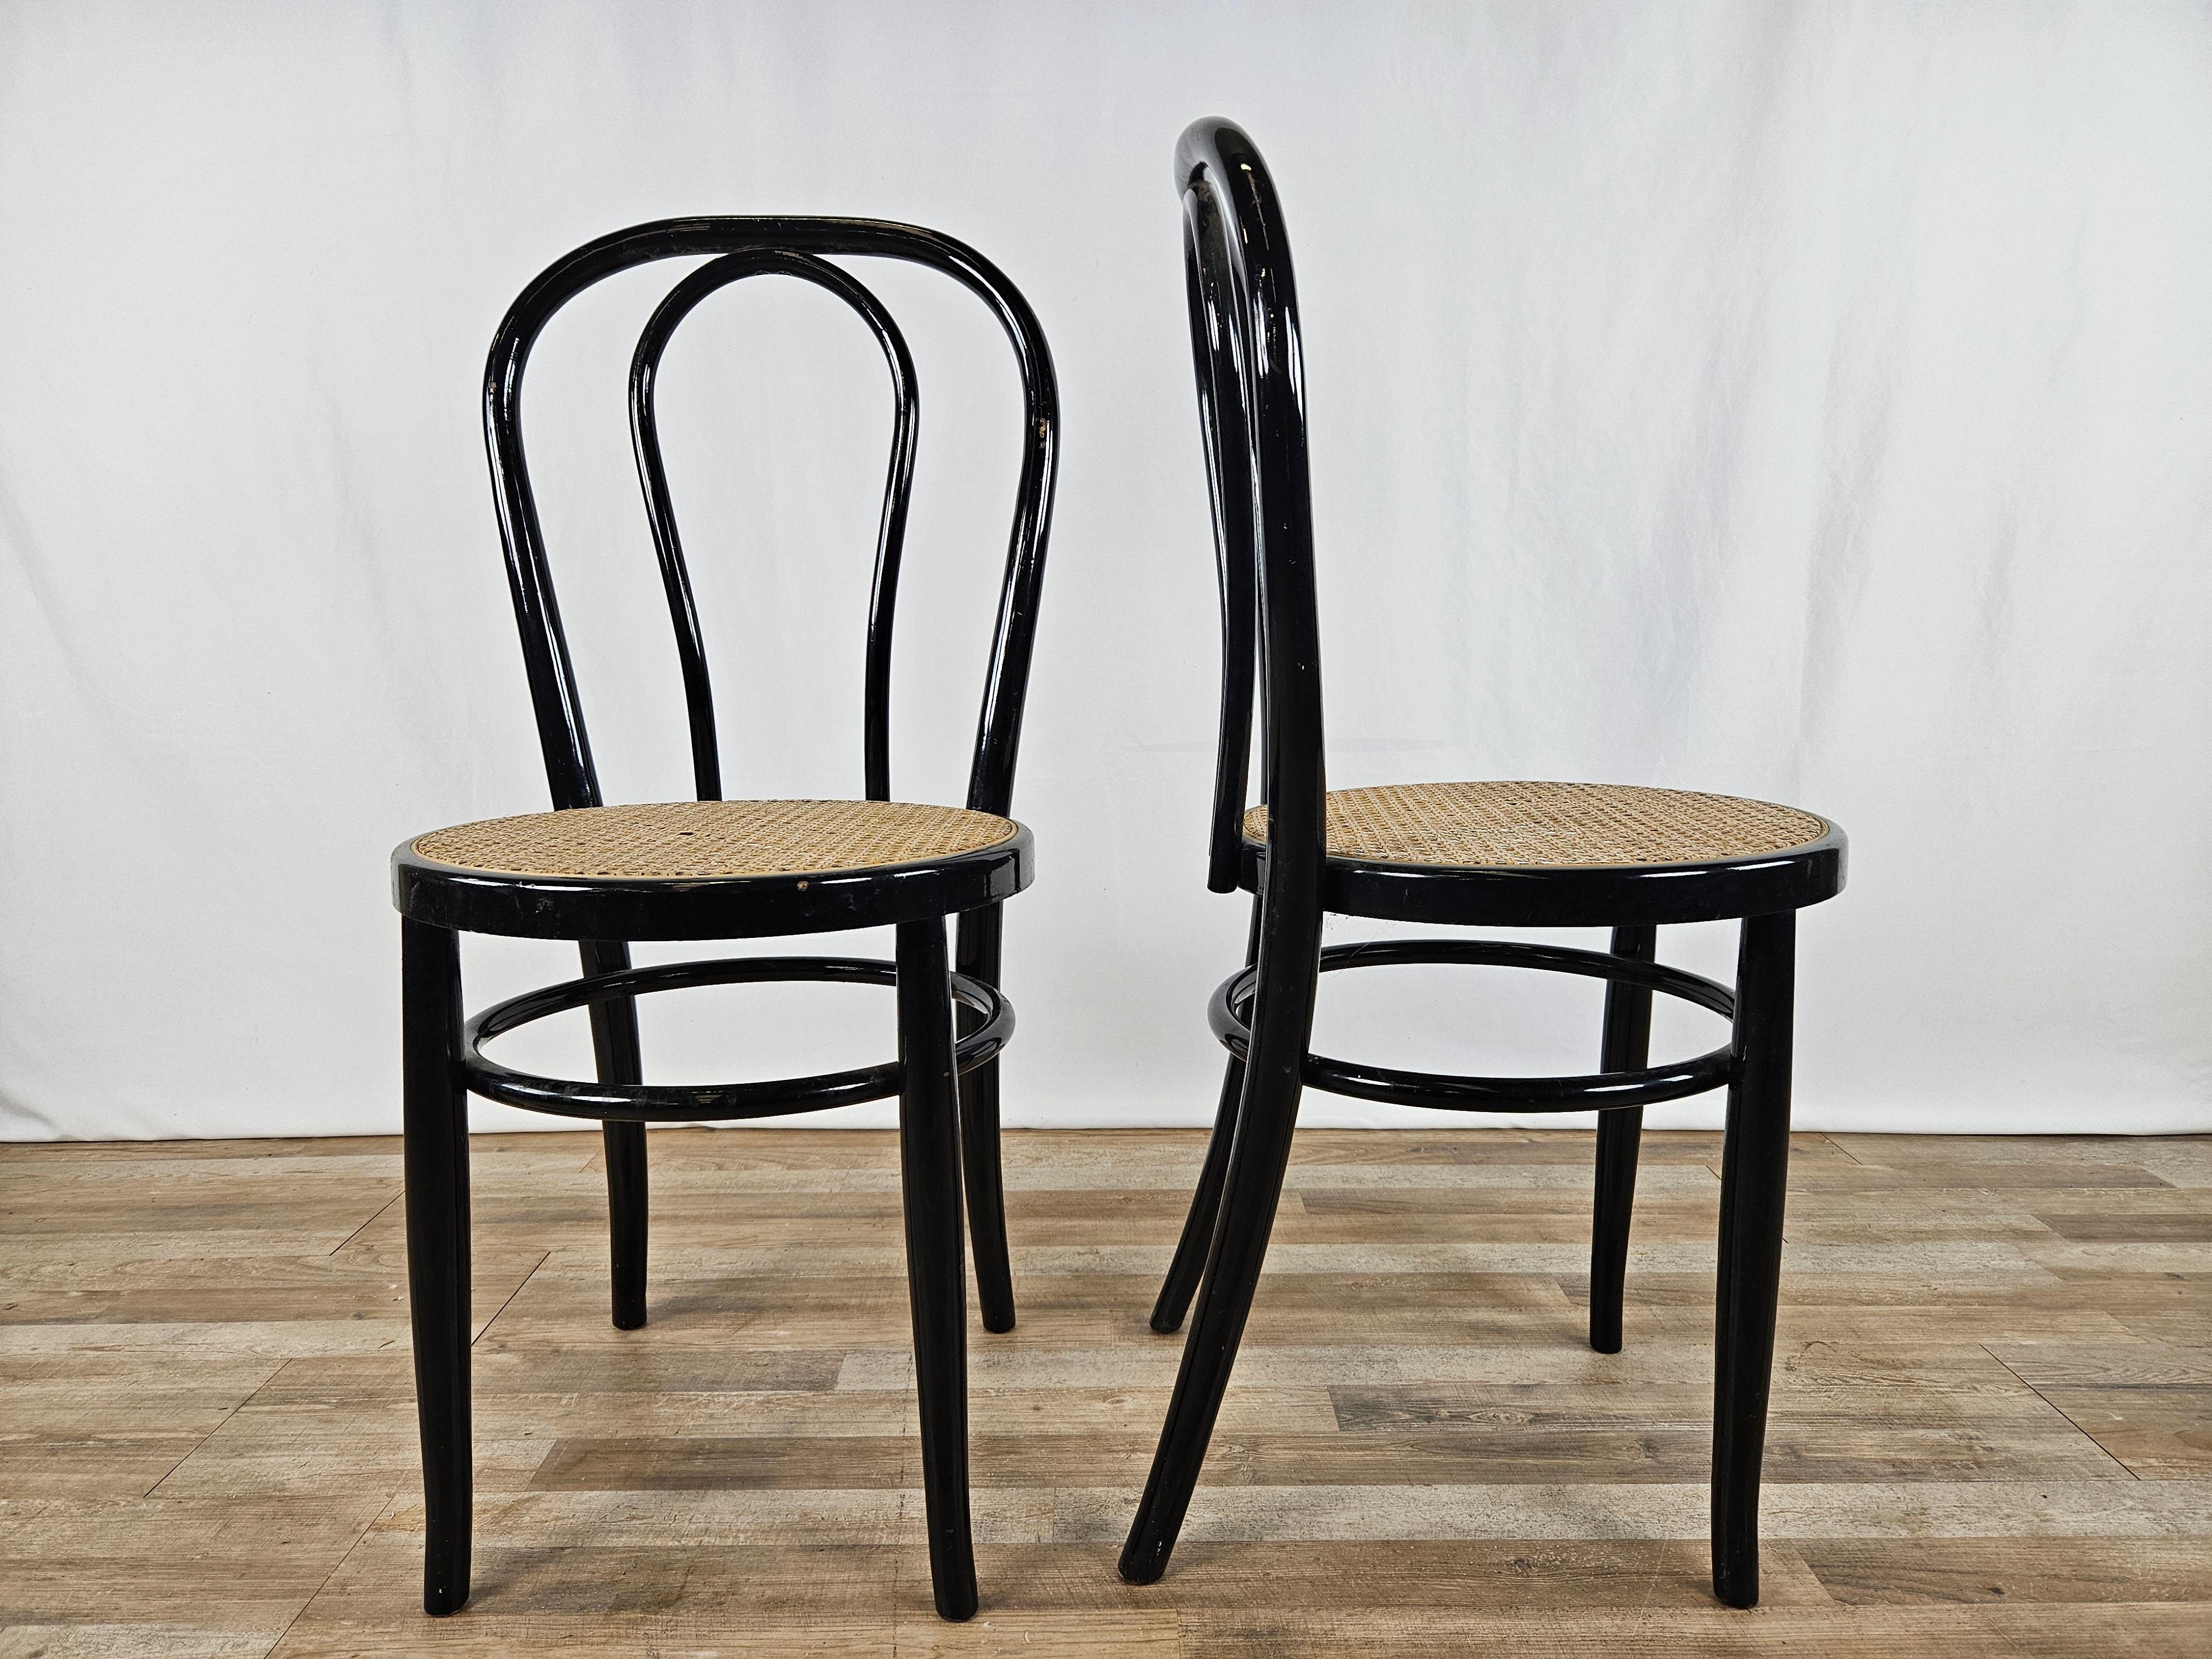 Coppia di sedie in legno laccato nero con seduta in paglia di Vienna.

Ideali per cucine, uffici, soggiorni o come elementi d'arredo.

Normali segni dovuti all'età e all'utilizzo.